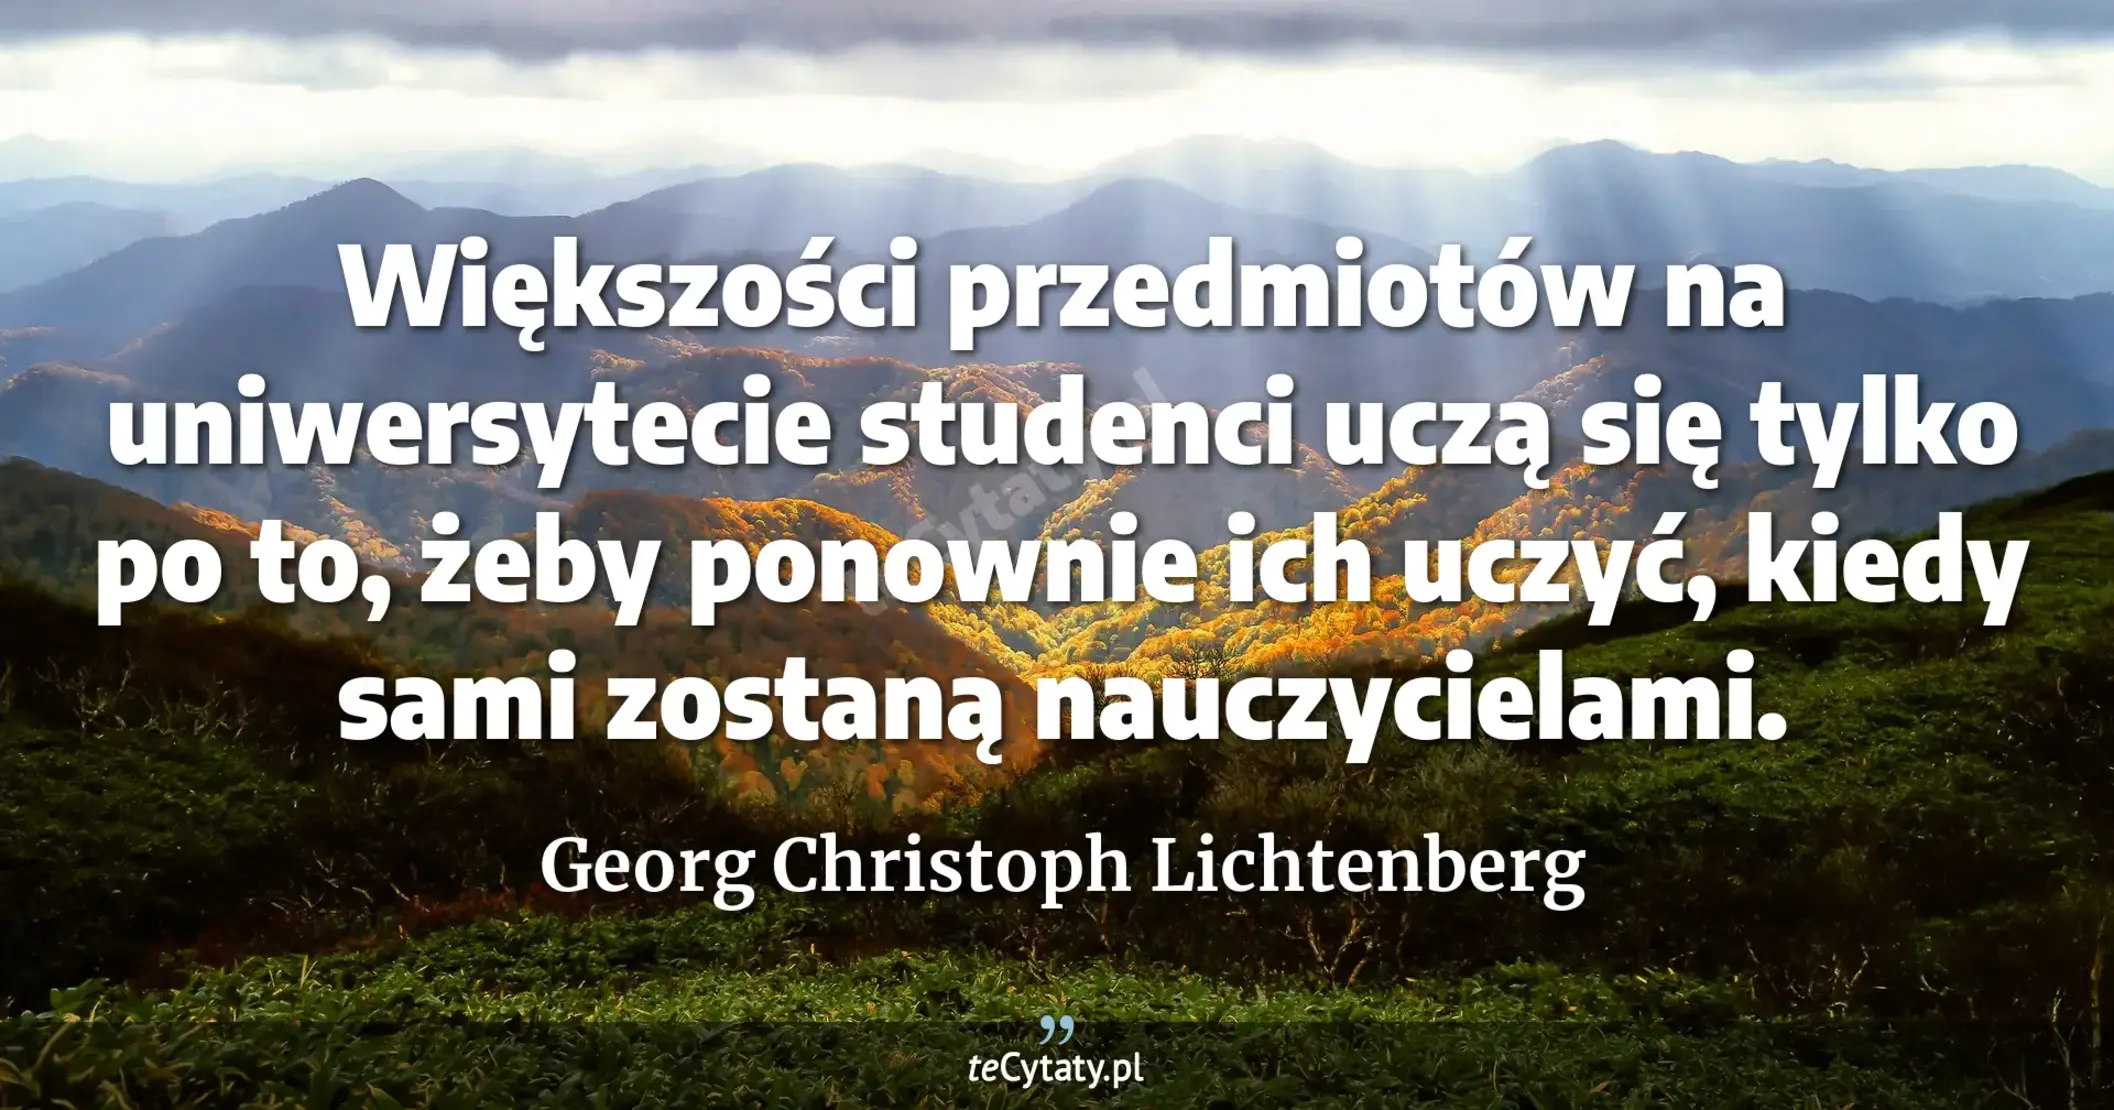 Większości przedmiotów na uniwersytecie studenci uczą się tylko po to, żeby ponownie ich uczyć, kiedy sami zostaną nauczycielami. - Georg Christoph Lichtenberg